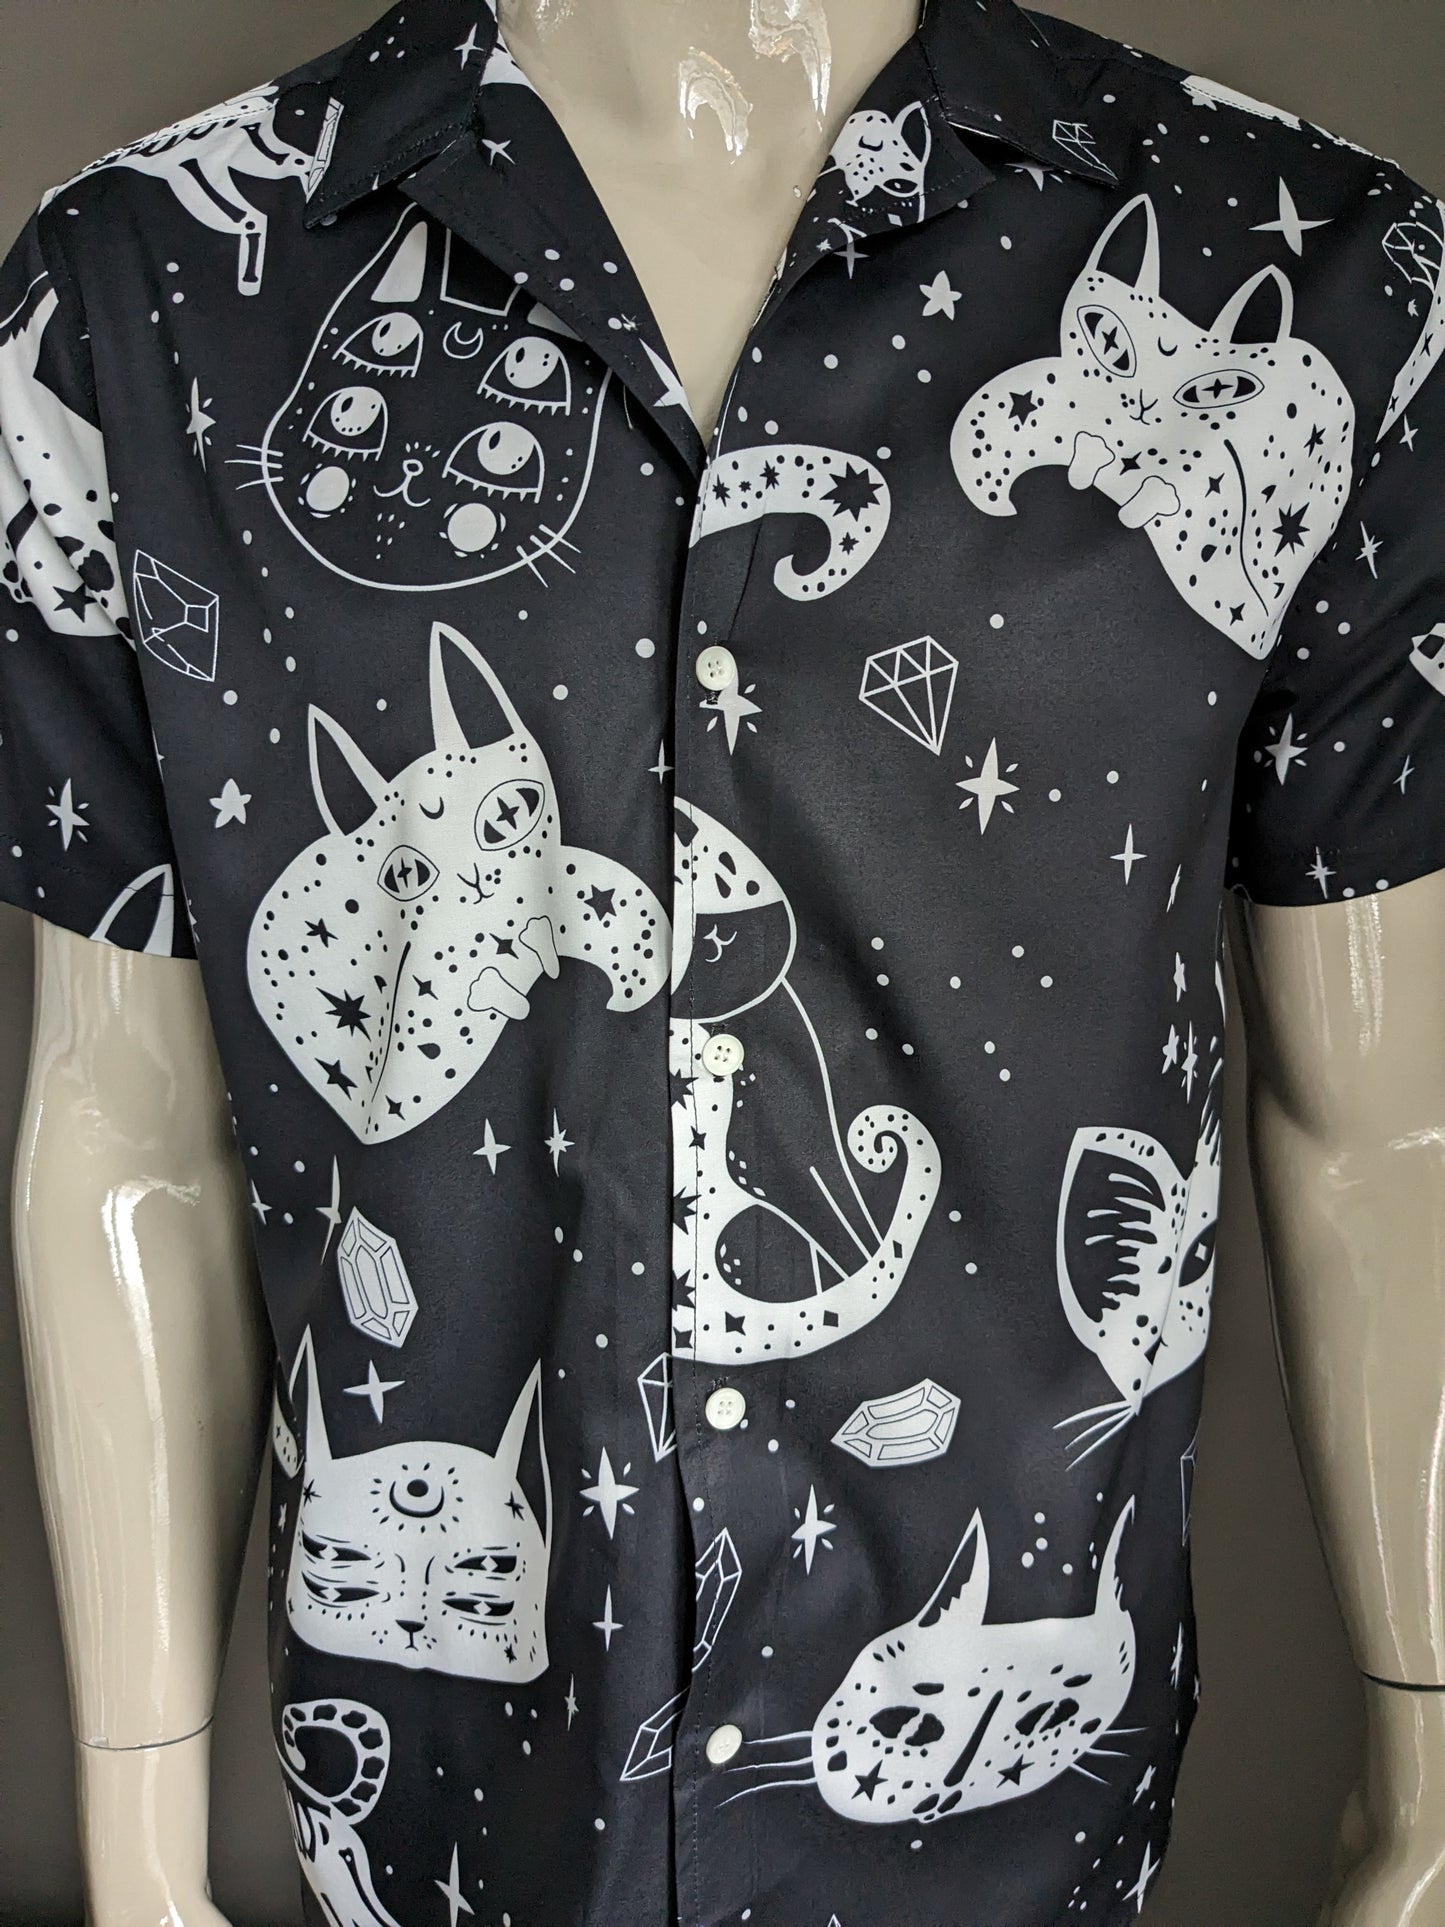 Camisa sin marca manga corta. Impresión de Galaxy Cats. En blanco y negro. Talla L.